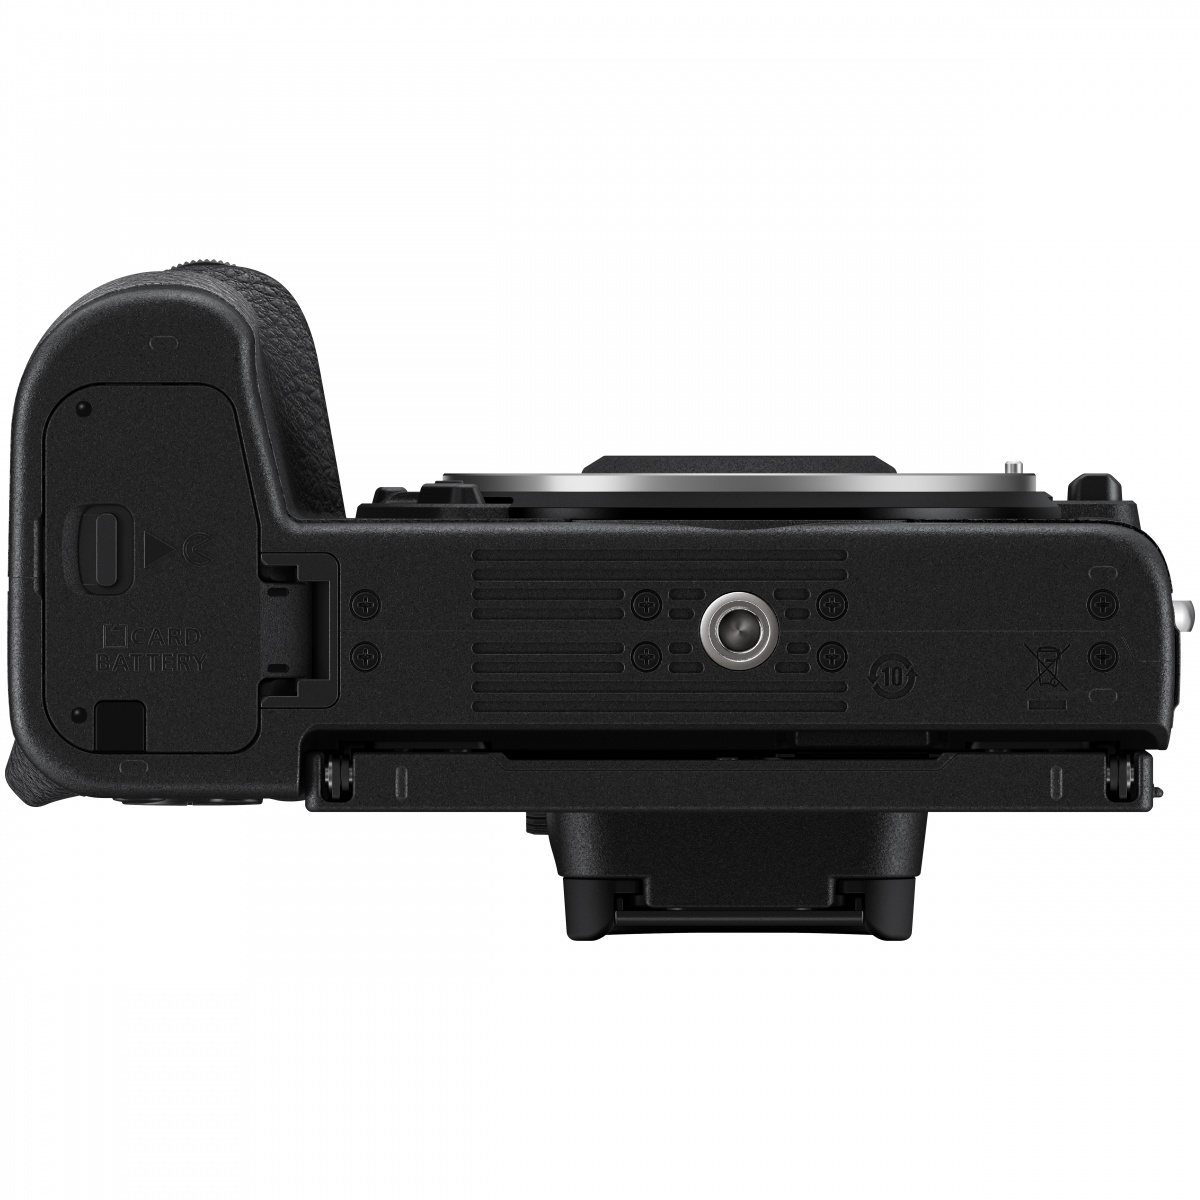 Nikon Z50 Kit mit FTZ Adapter